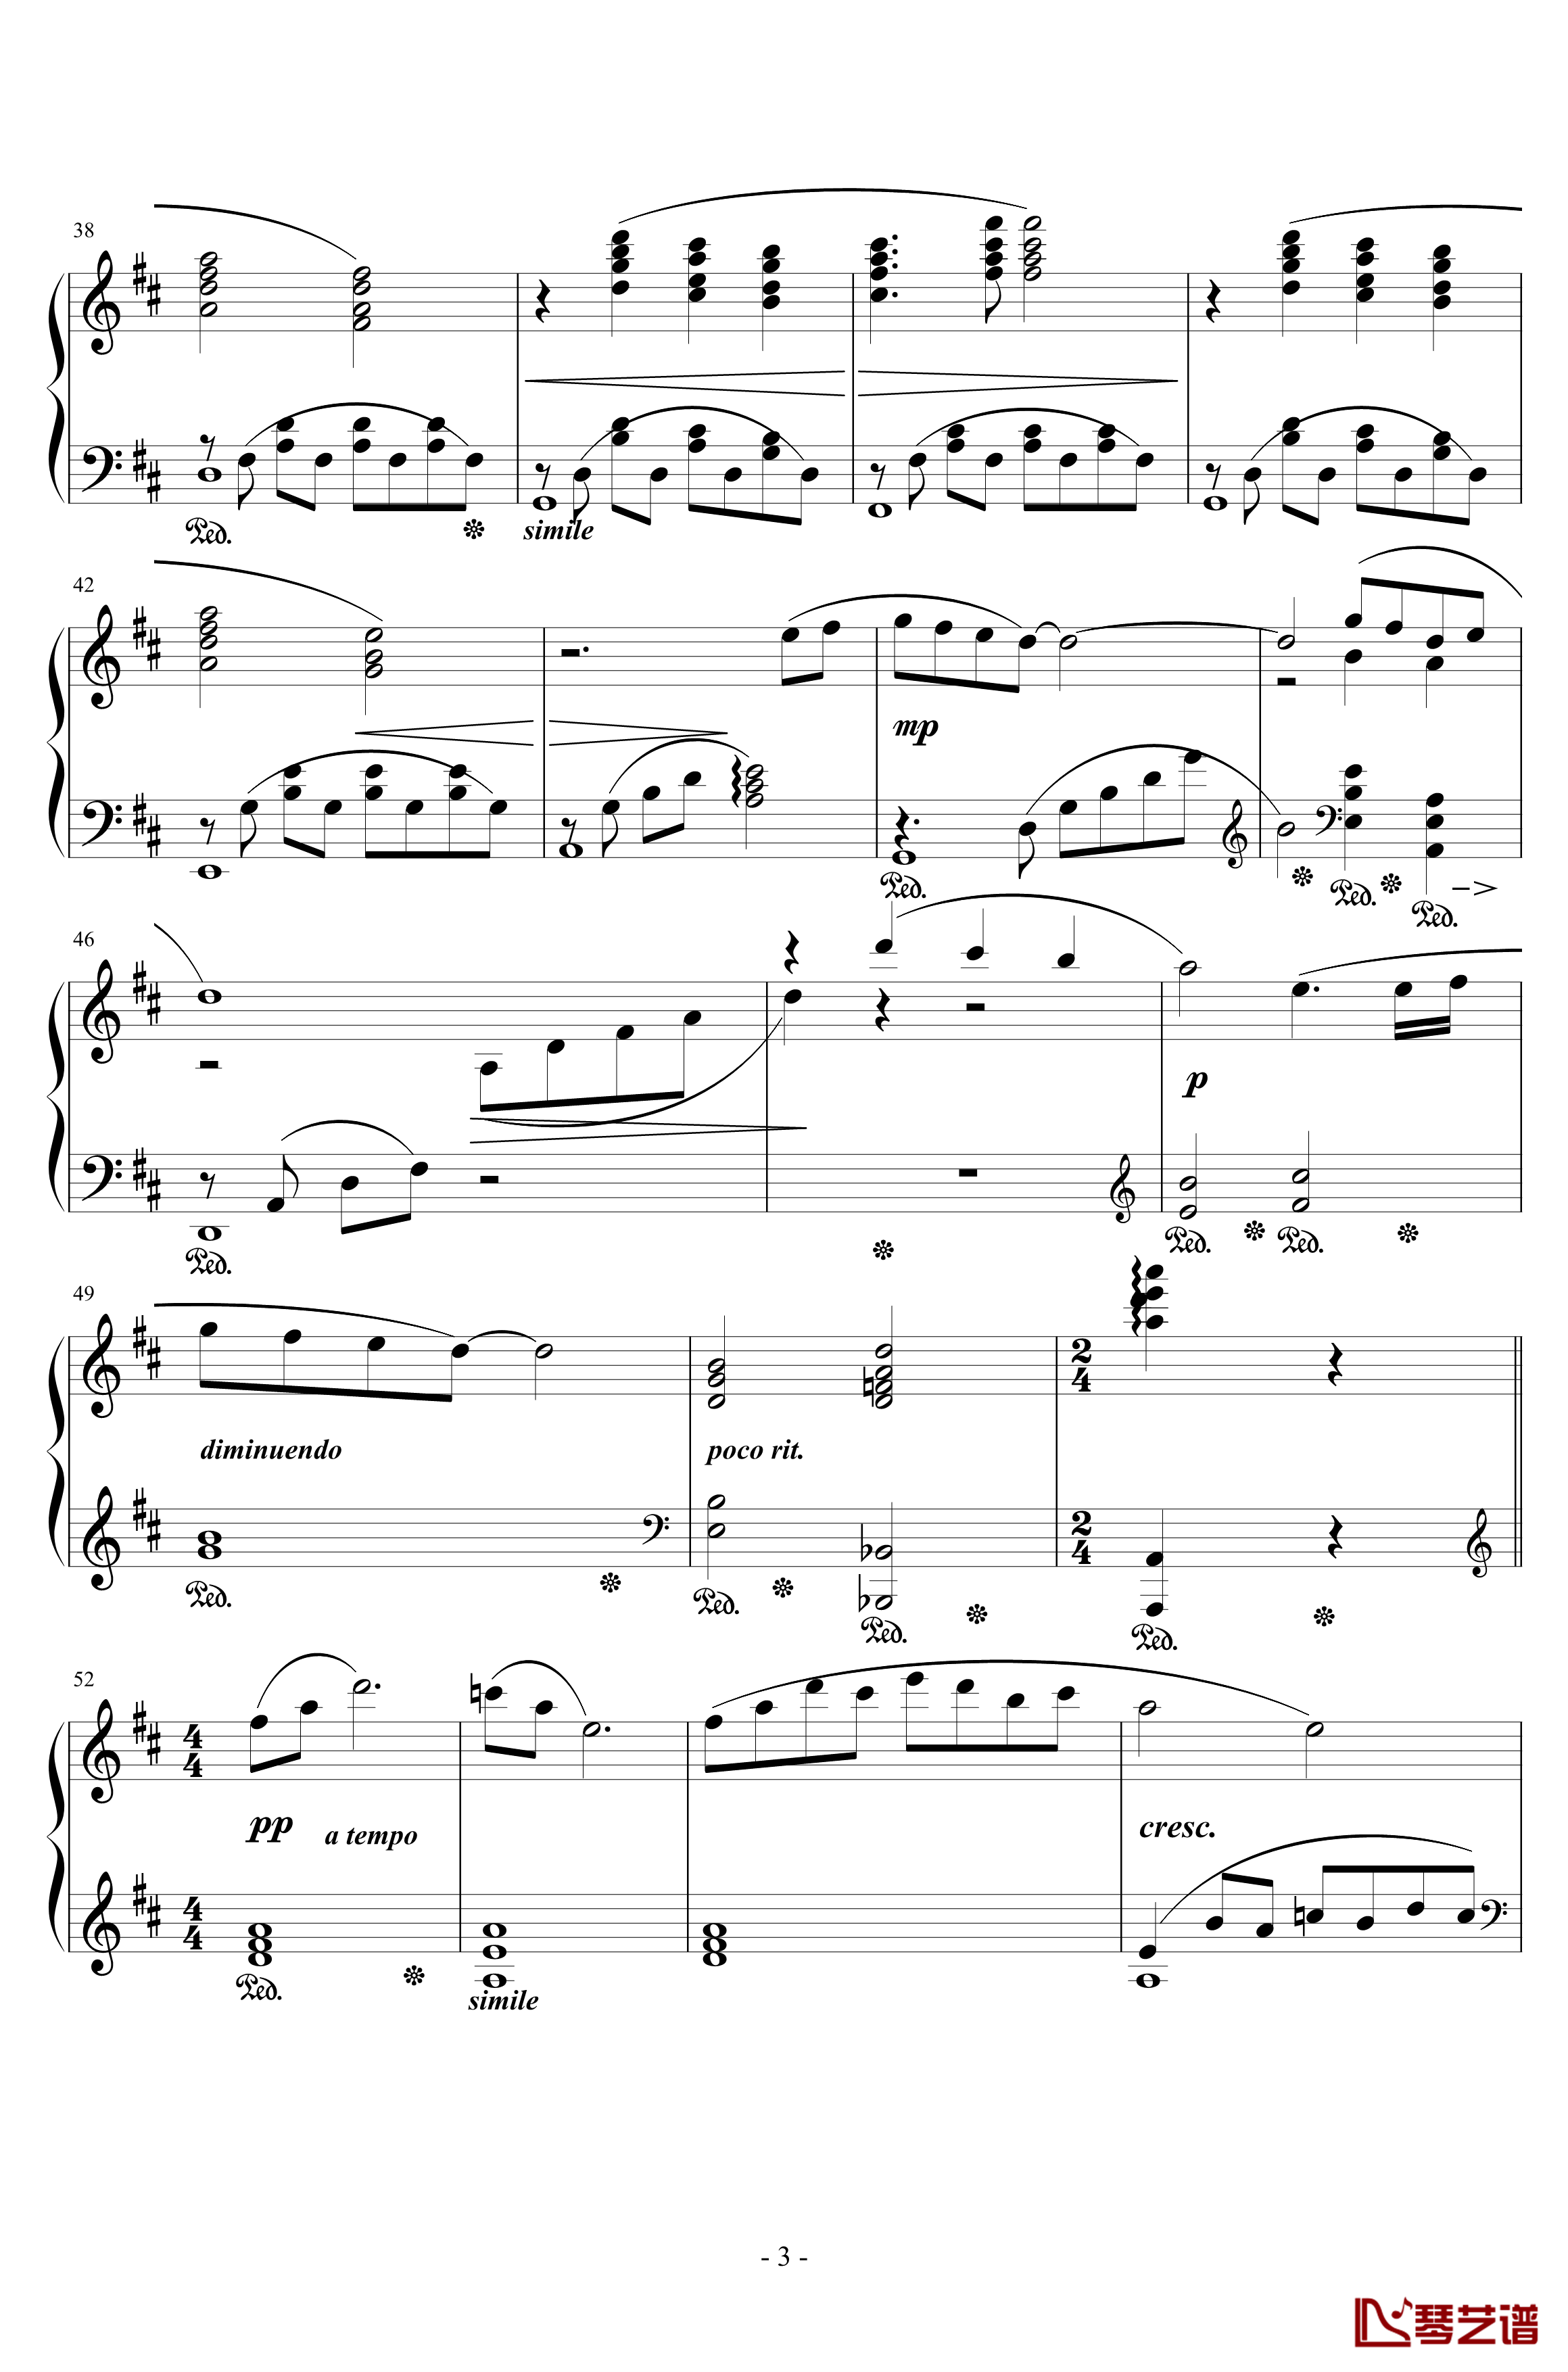 最终幻想7爱丽丝的主题钢琴谱-完整版本-植松伸夫3